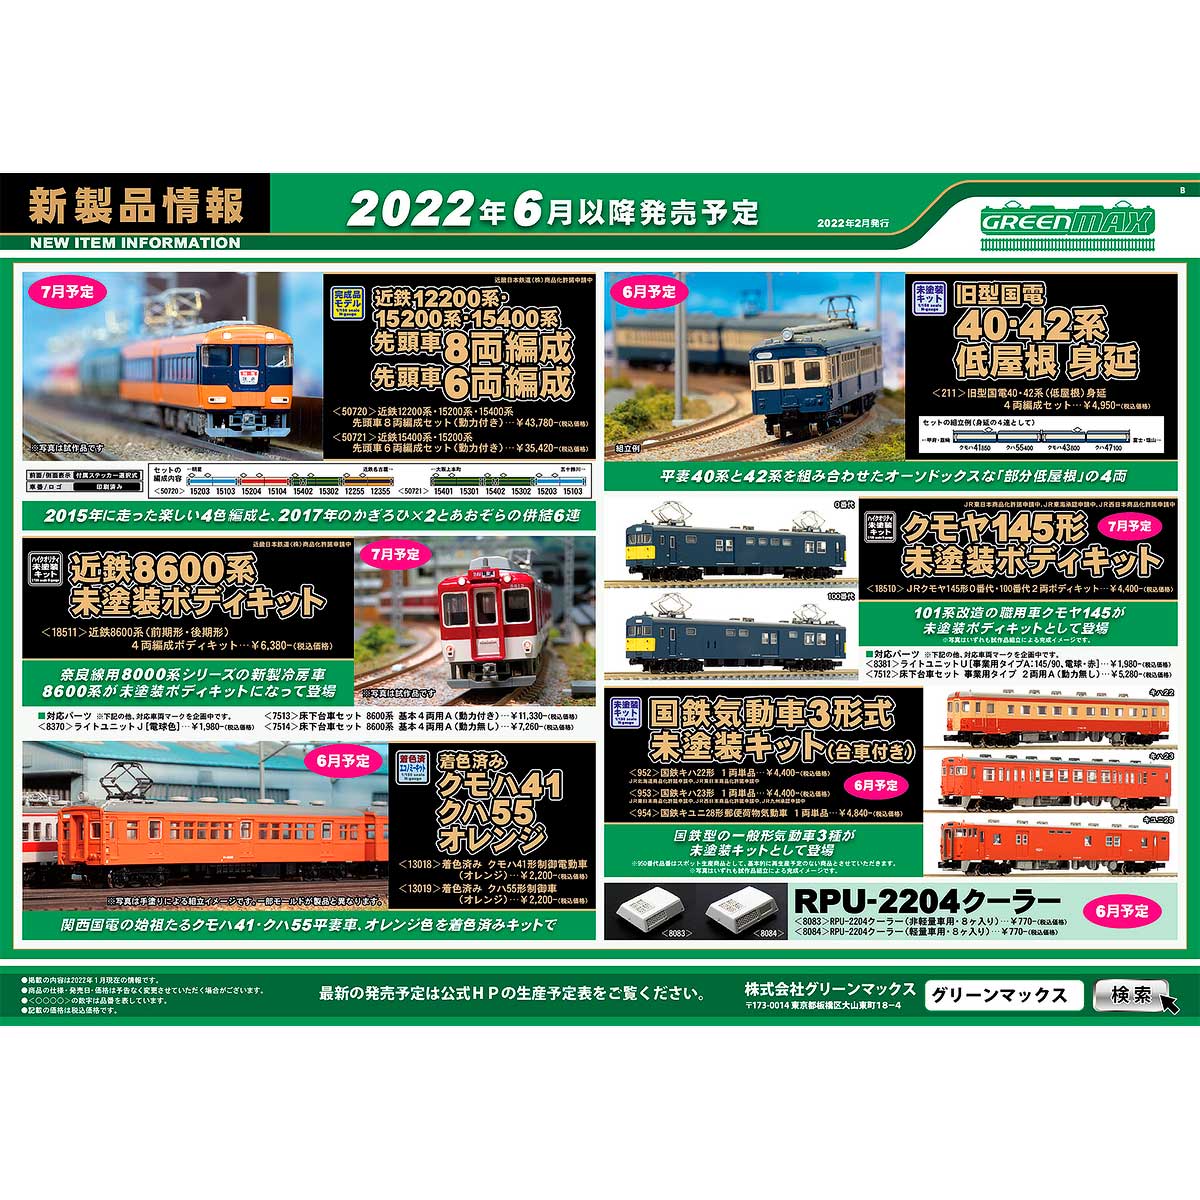 2022年2月14日発行B｜新製品情報ポスター｜Nゲージ鉄道模型のグリーン 